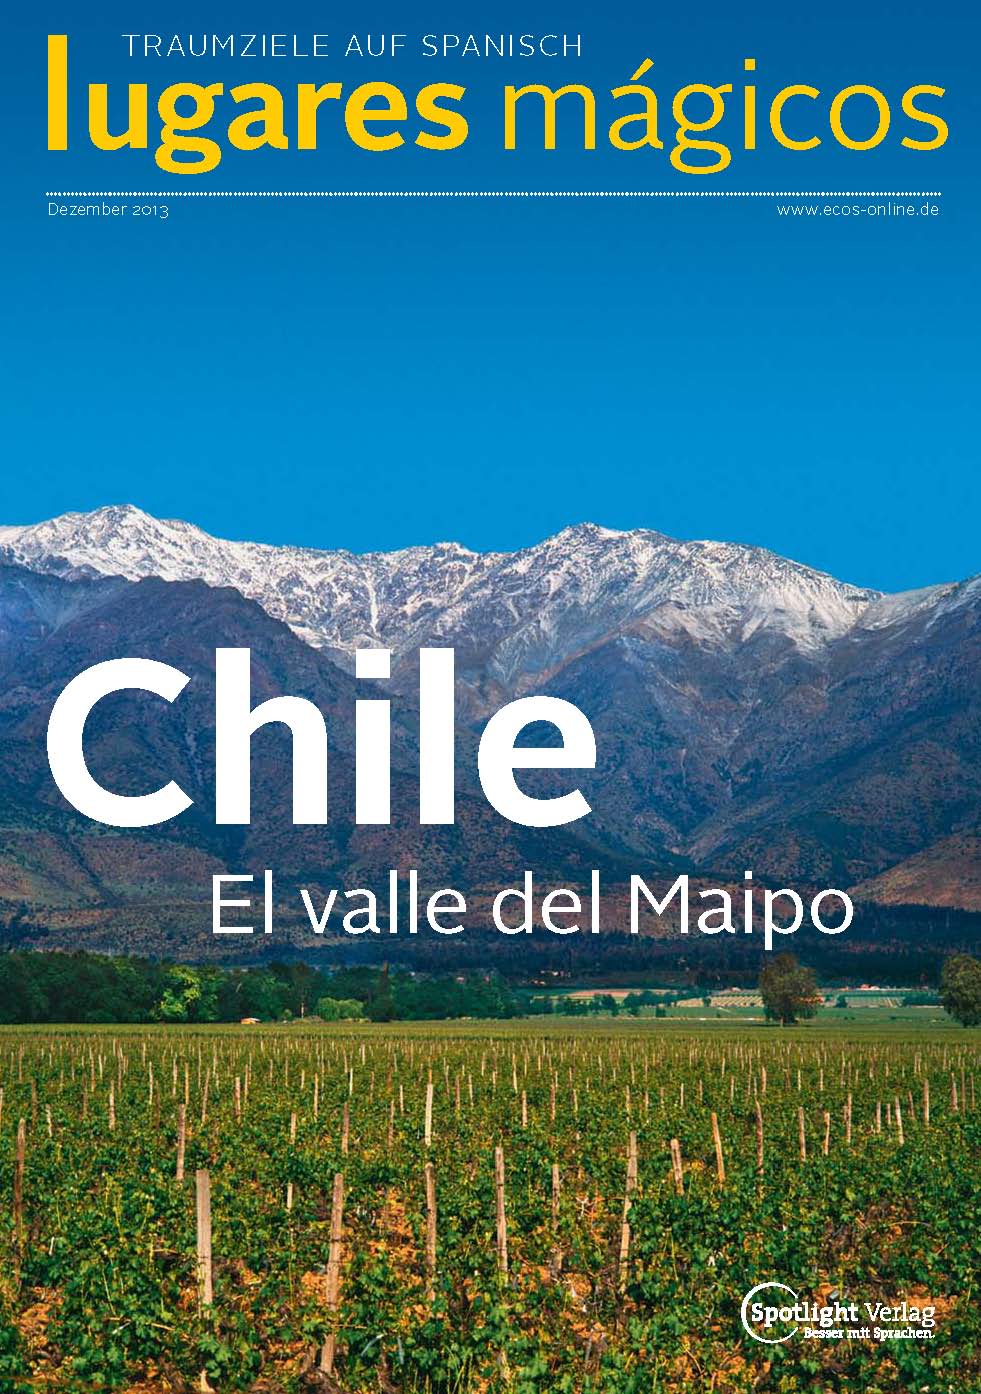 LugaresMagicos_Chile - El Valle del Maipo_ECOS2013  M.M.